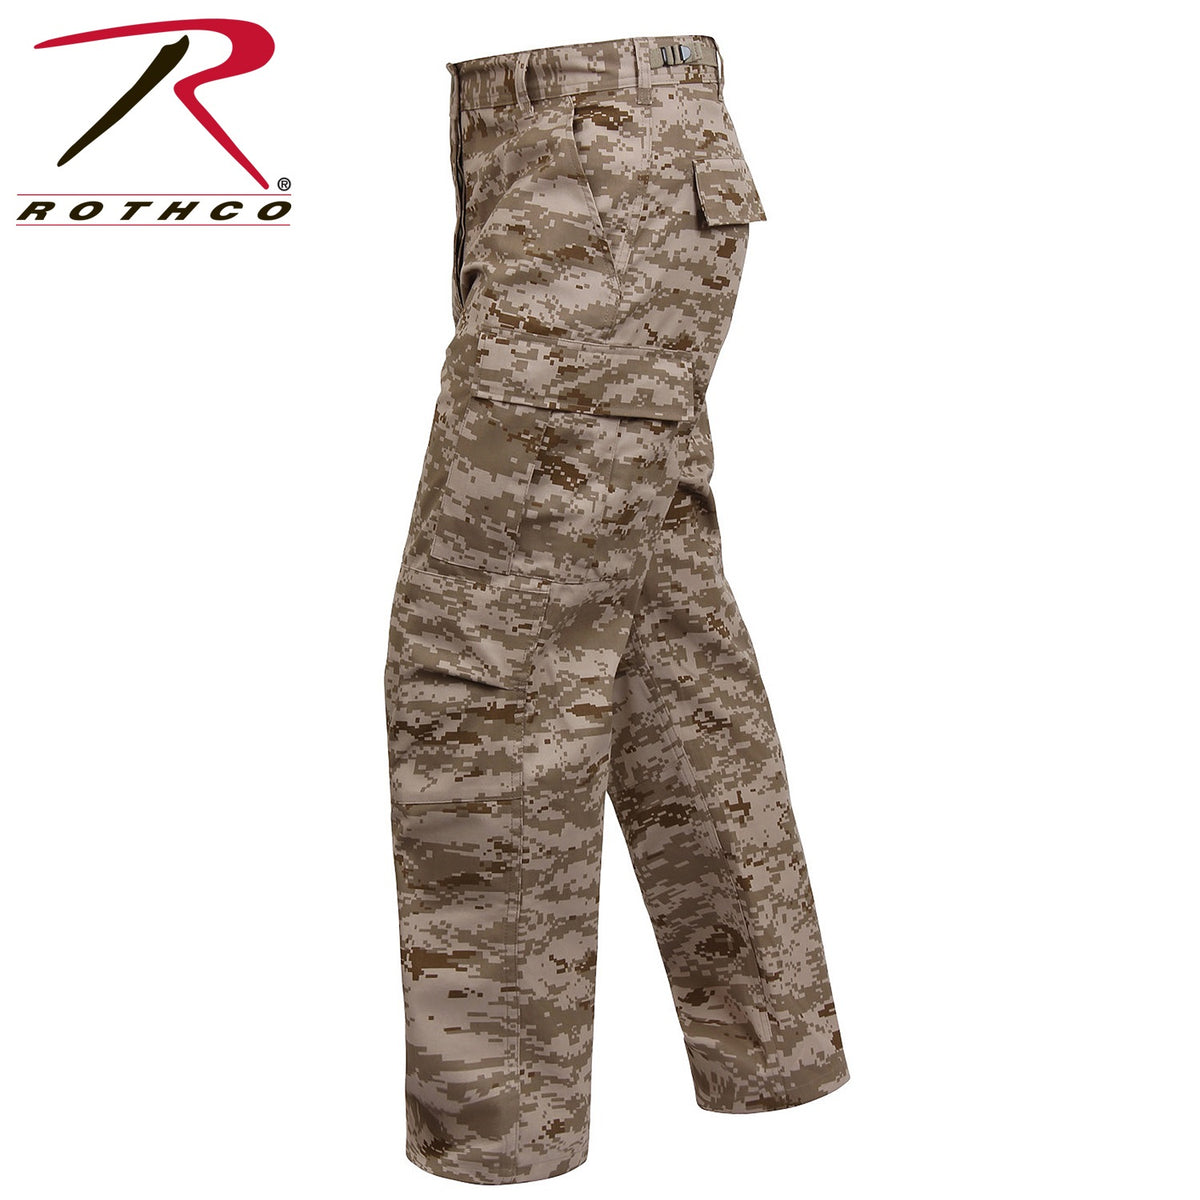 2XL ROTHCO Solid BDU Military Shirts Khaki Battle Dress Uniform